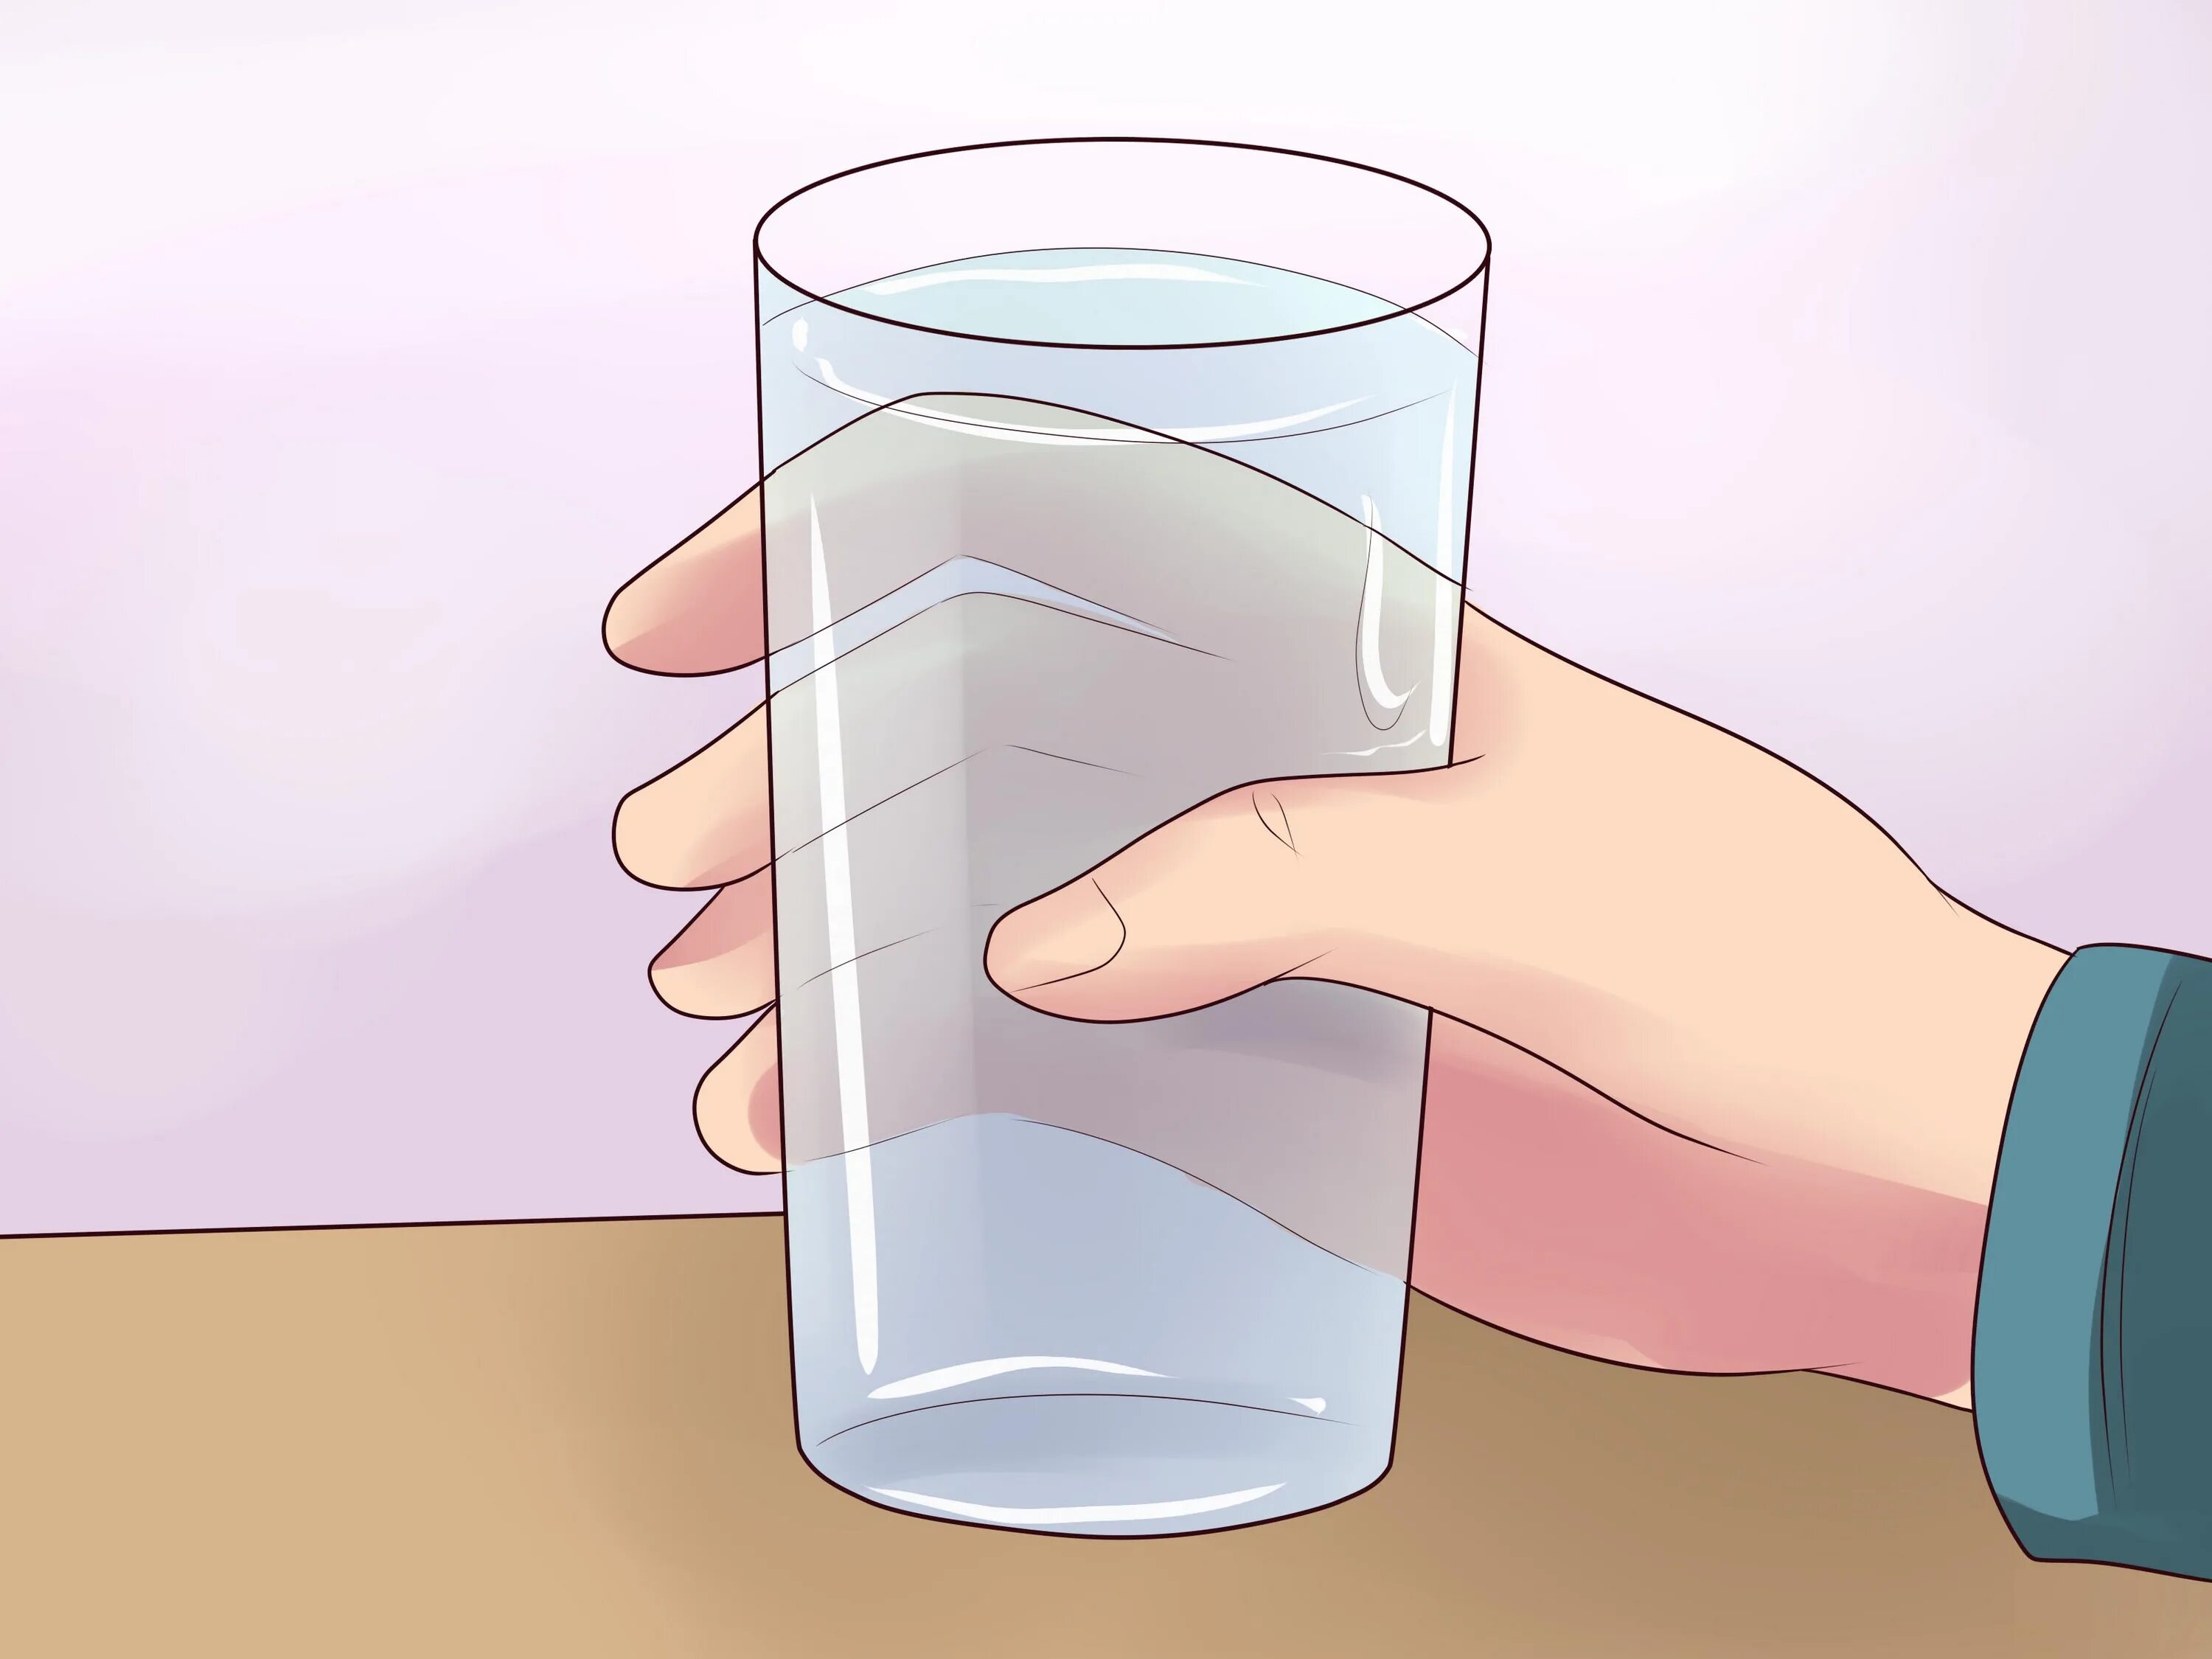 Налейте в пластиковый стакан воды. Стакан воды. Стакан воды в руке. Опрокинутый стакан с водой. Переливание воды из стакана в стакан.